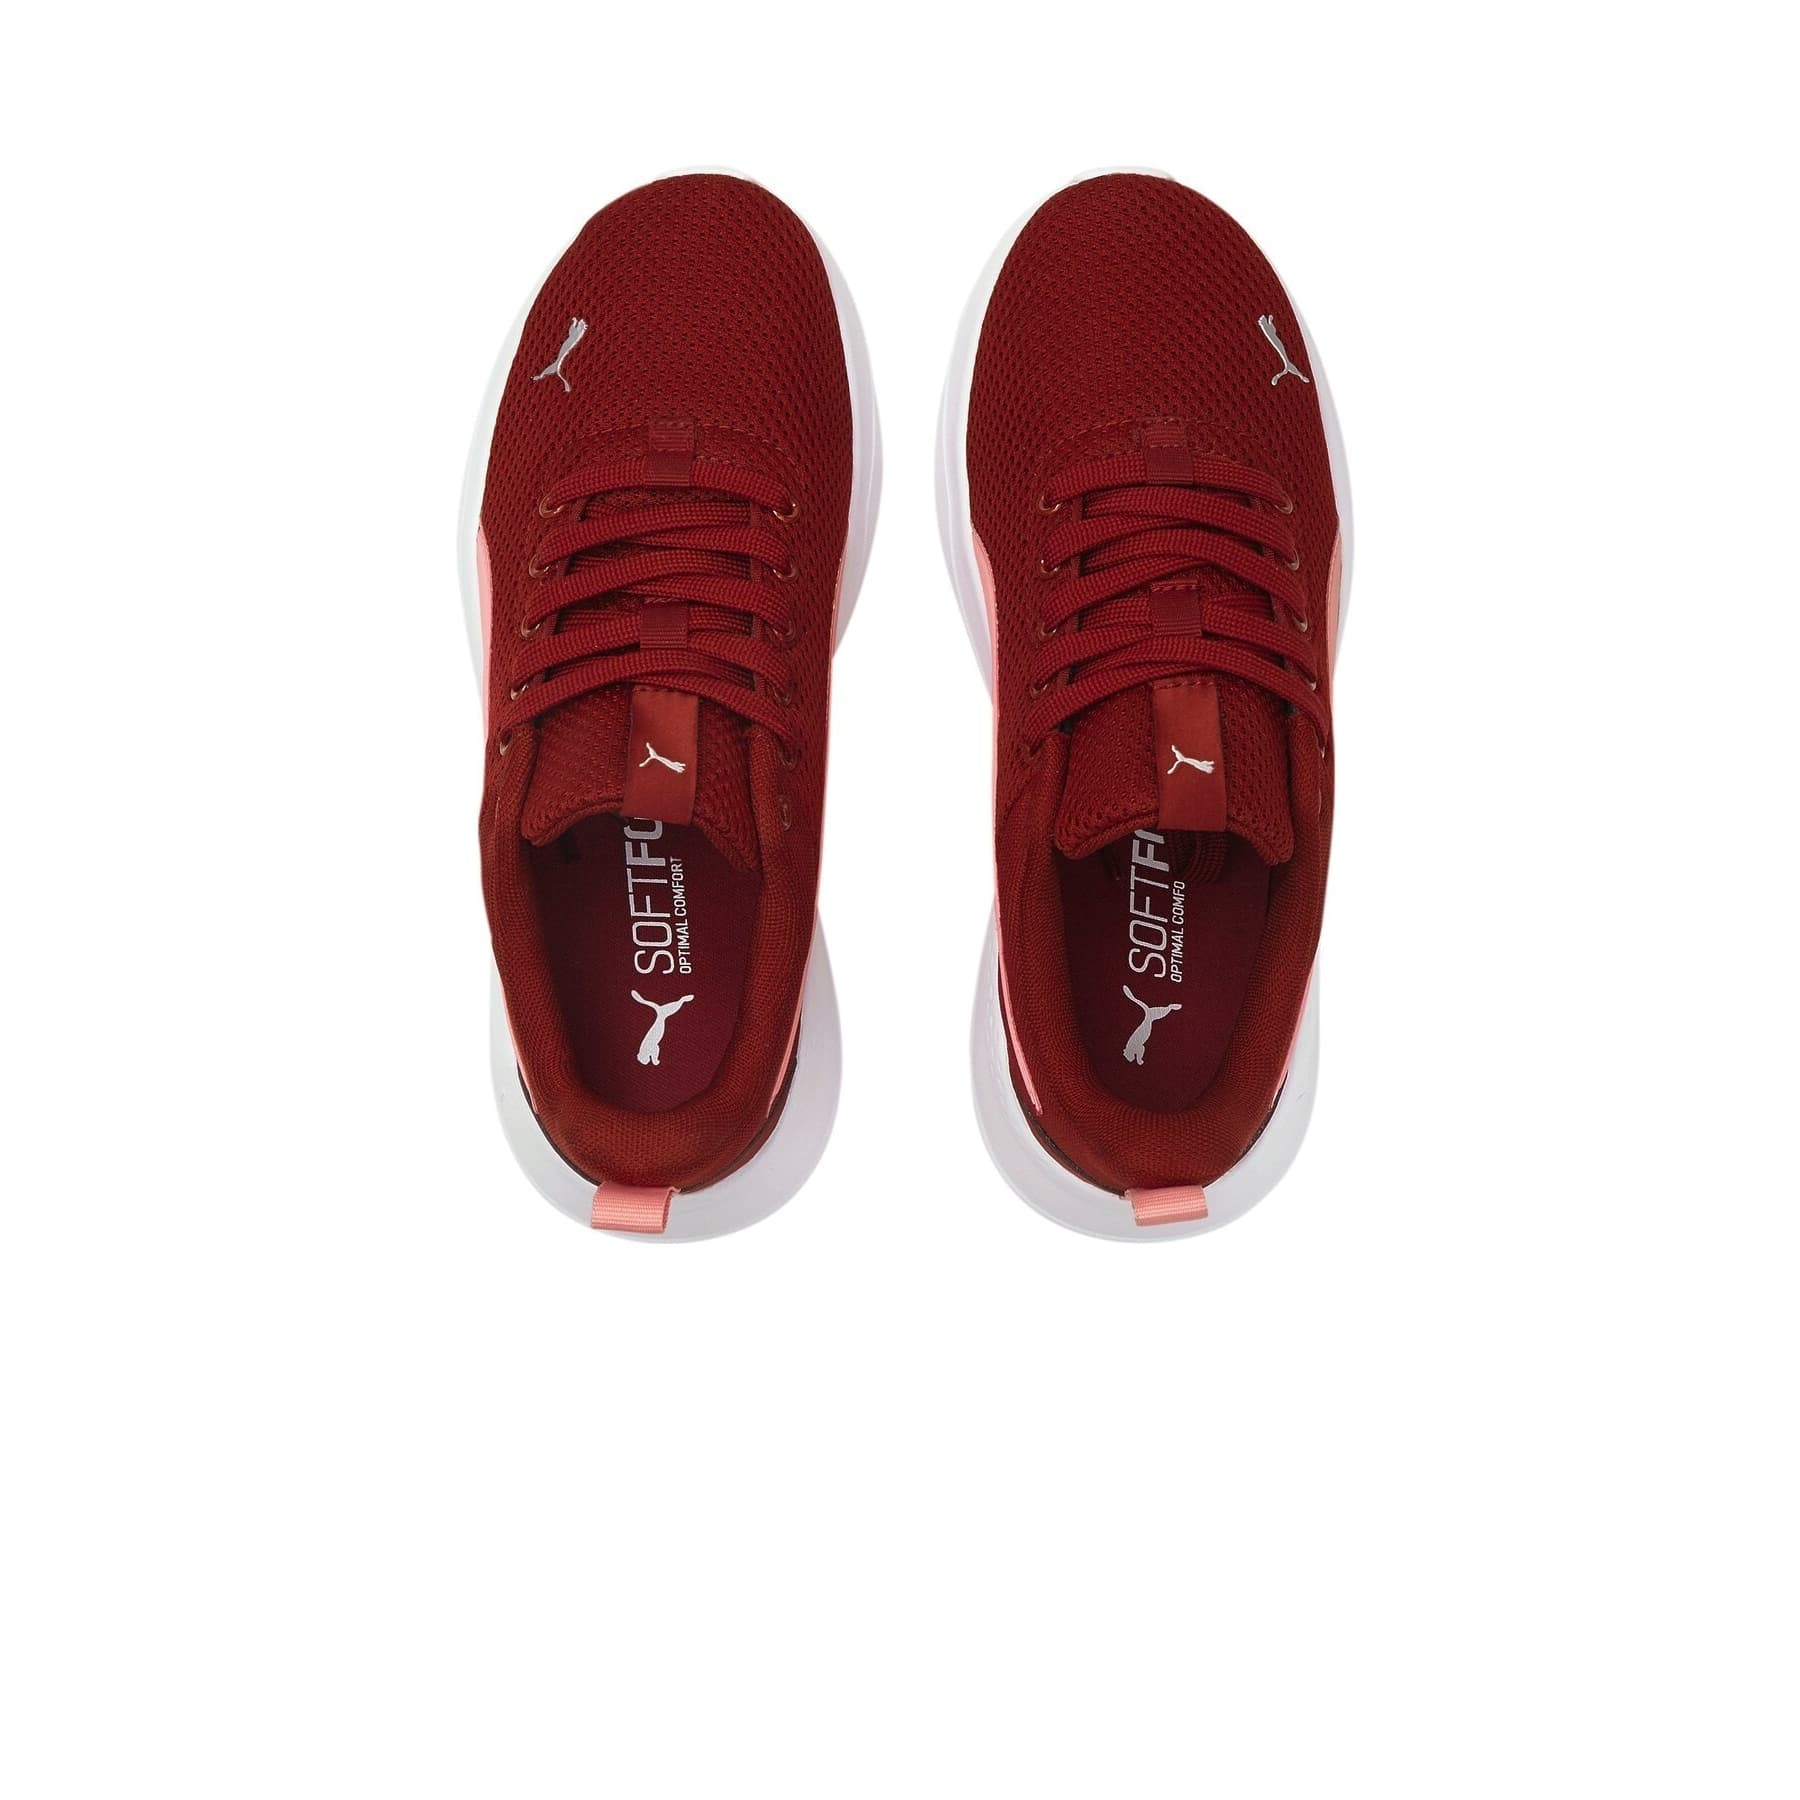 Anzarun Lite JR Kadın Kırmızı Spor Ayakkabı (372004-15)